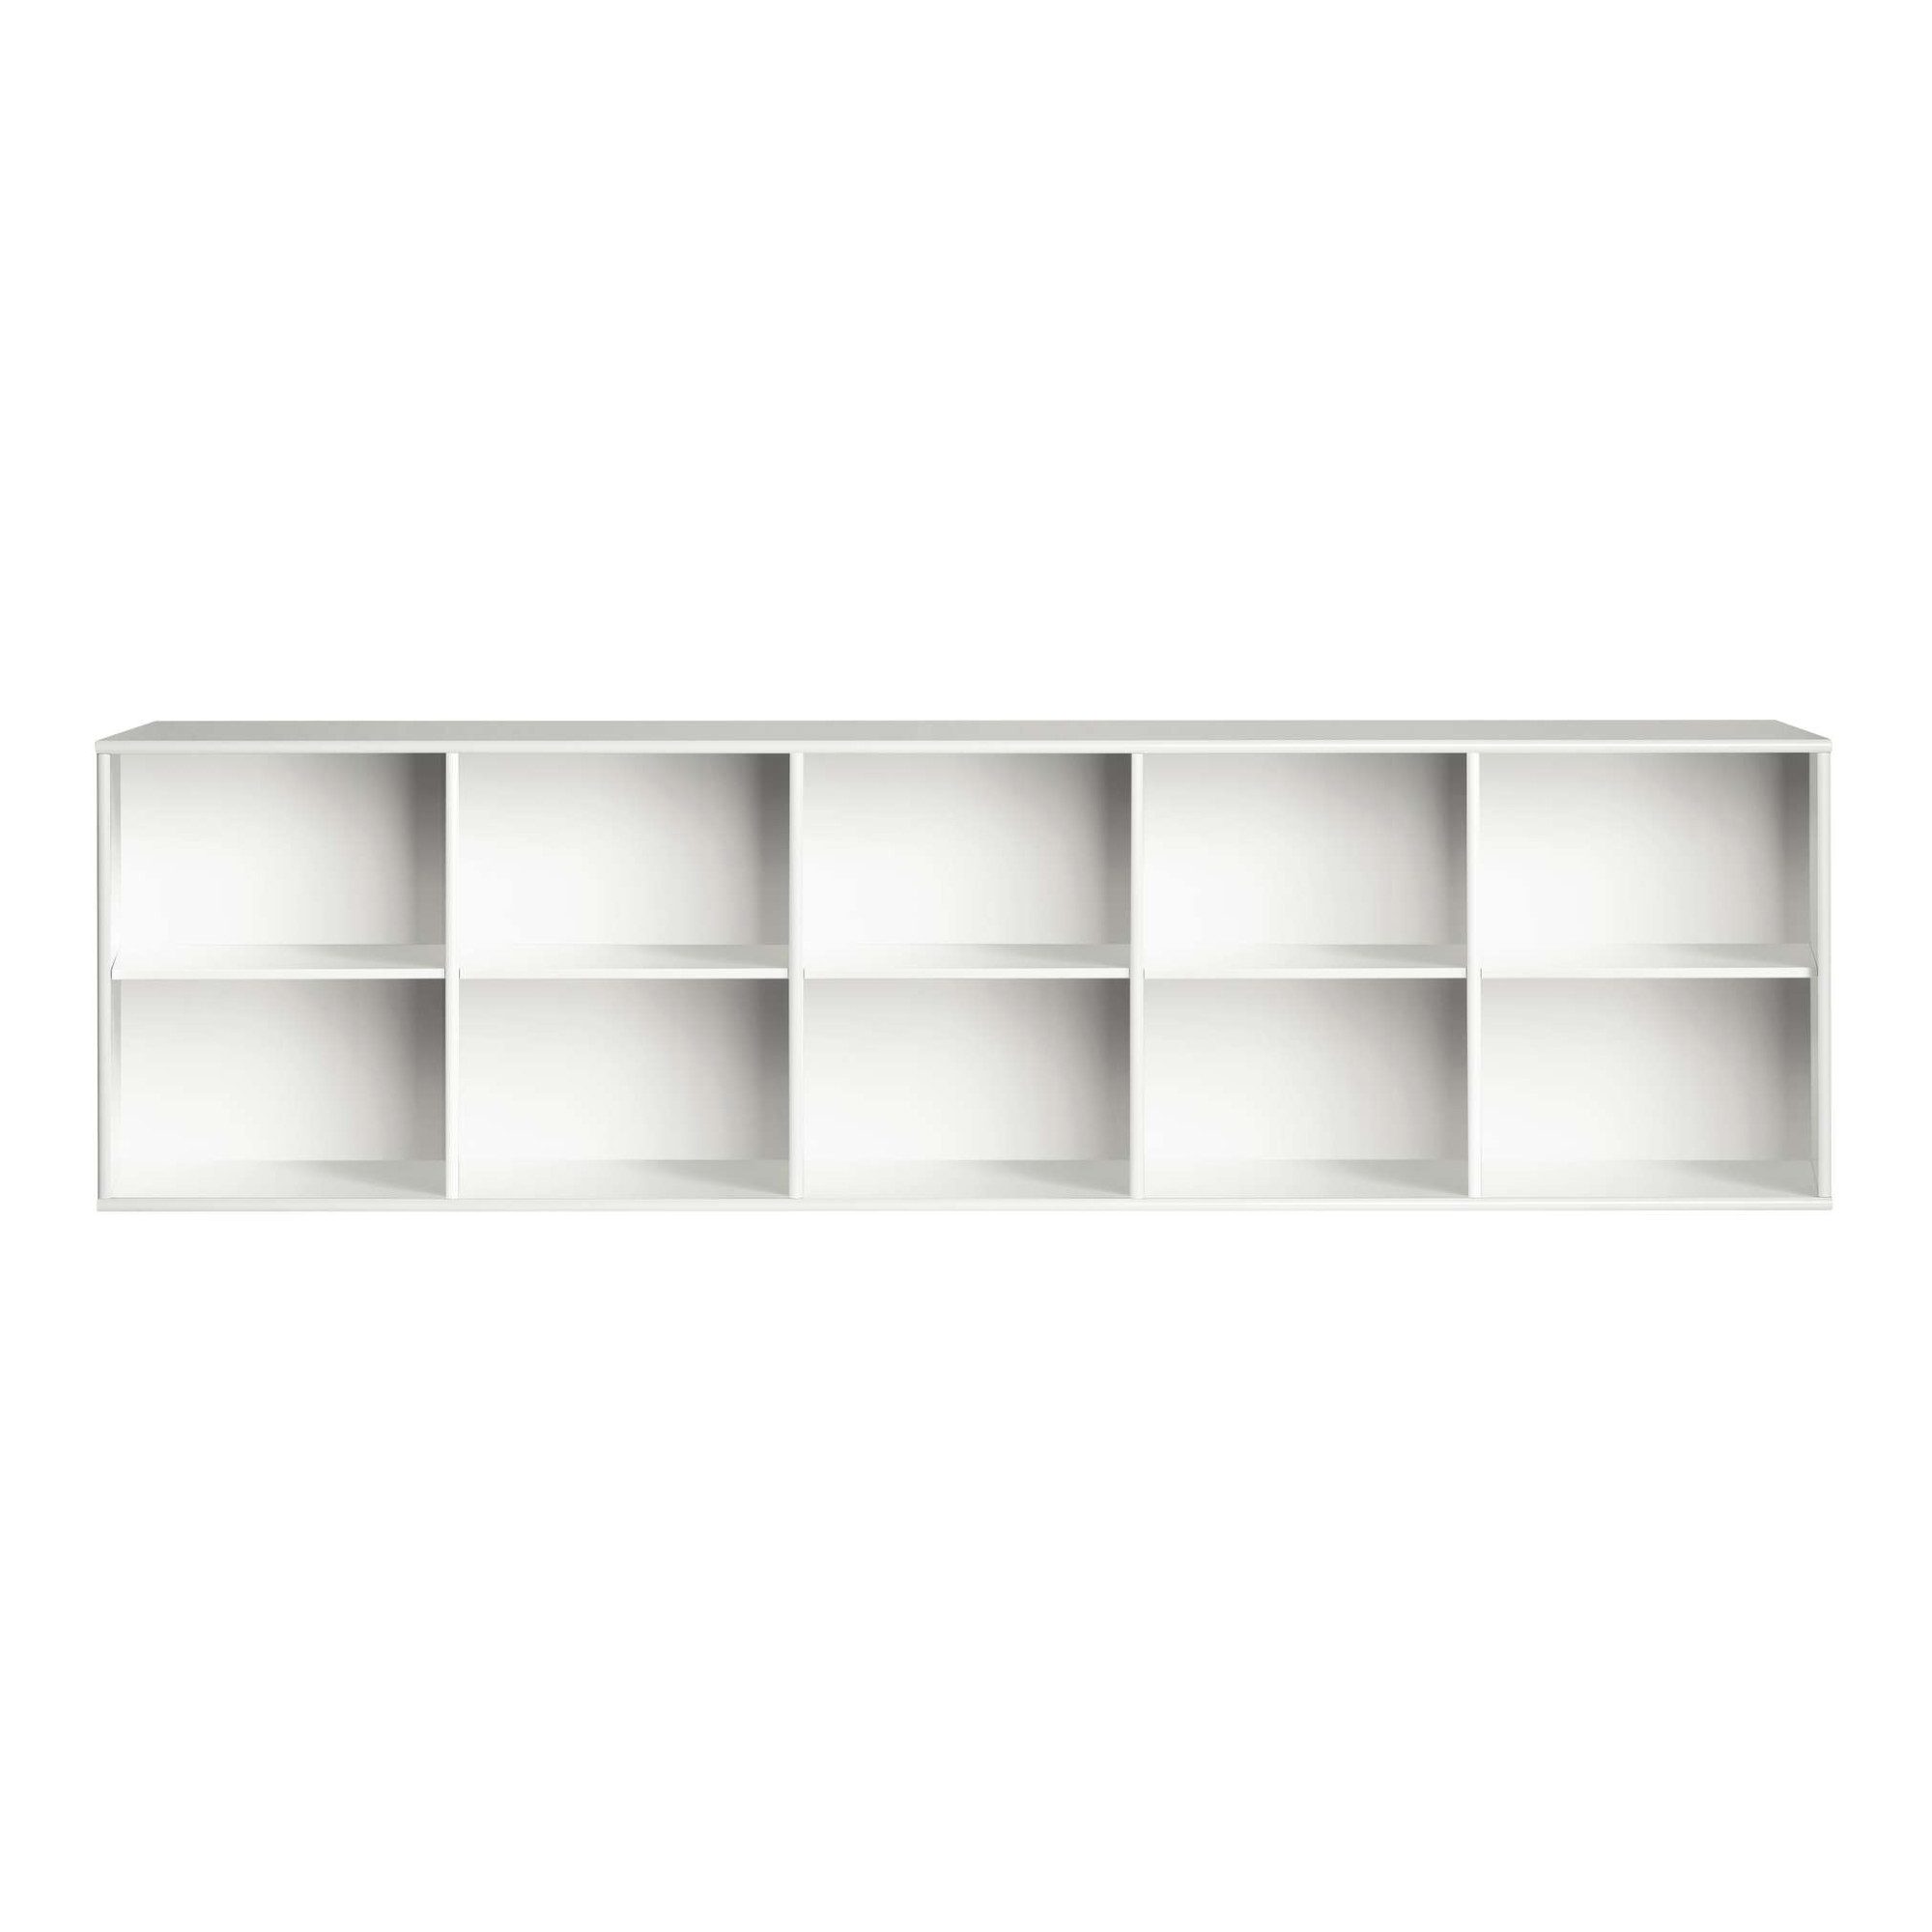 Hammel Furniture Sideboard Mistral, Hochwertig Bücherregal, Lowboard, hängend/stehend montierbar, mit 5 verstellbare Einlegeböden, B: 220 cm, anpassungsbar Designmöbel